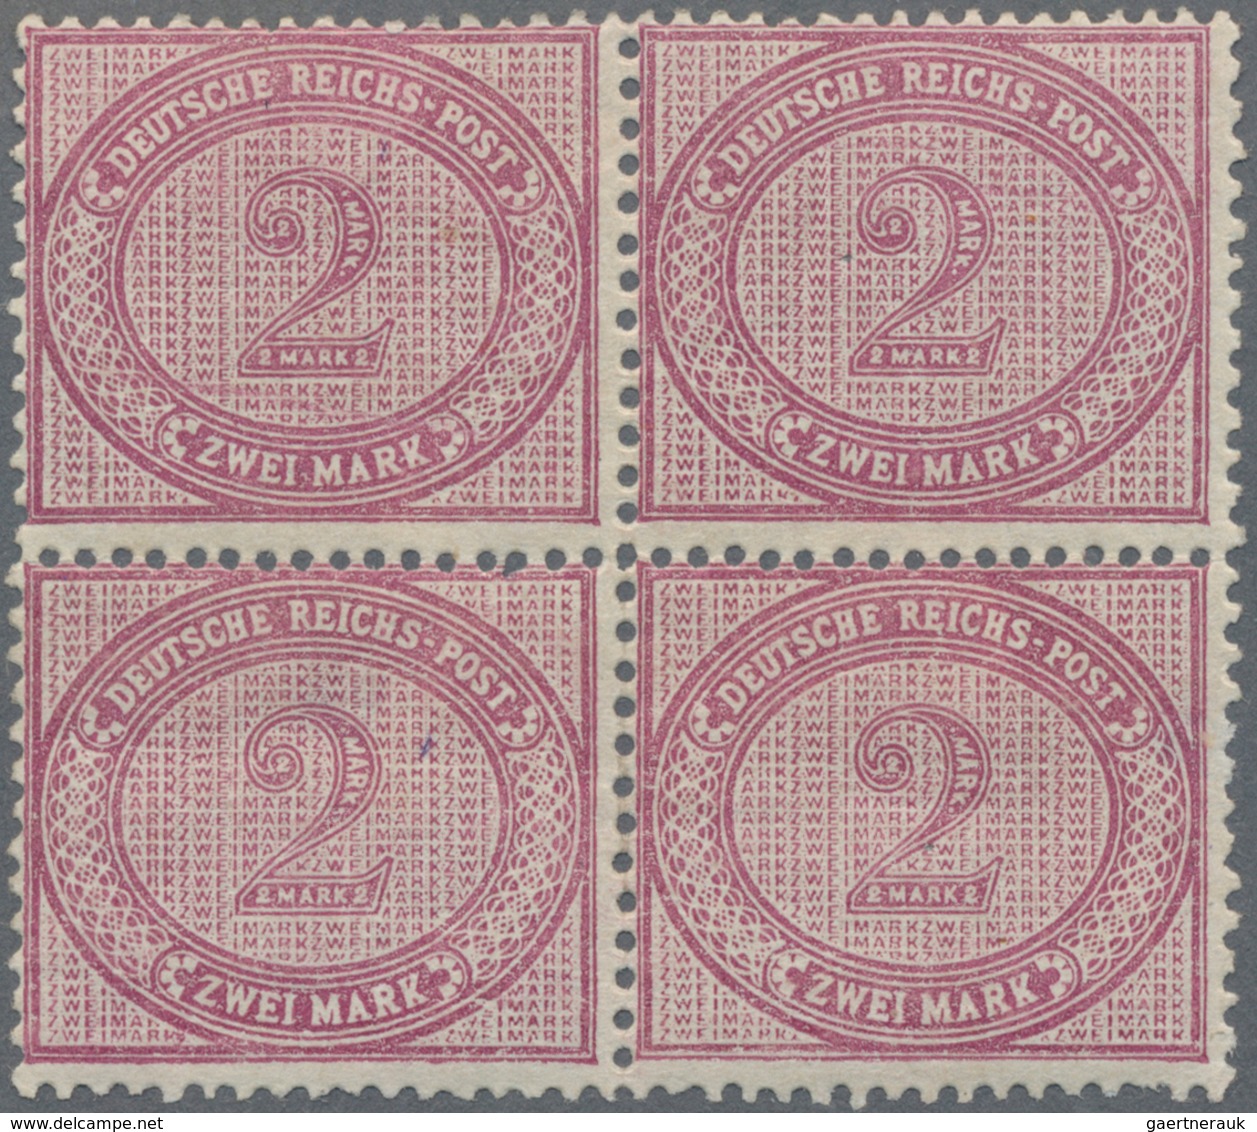 Deutsches Reich - Pfennige: 1875, 2 Mark, Erstauflage in violettpurpur in ungebrauchter Erhaltung im